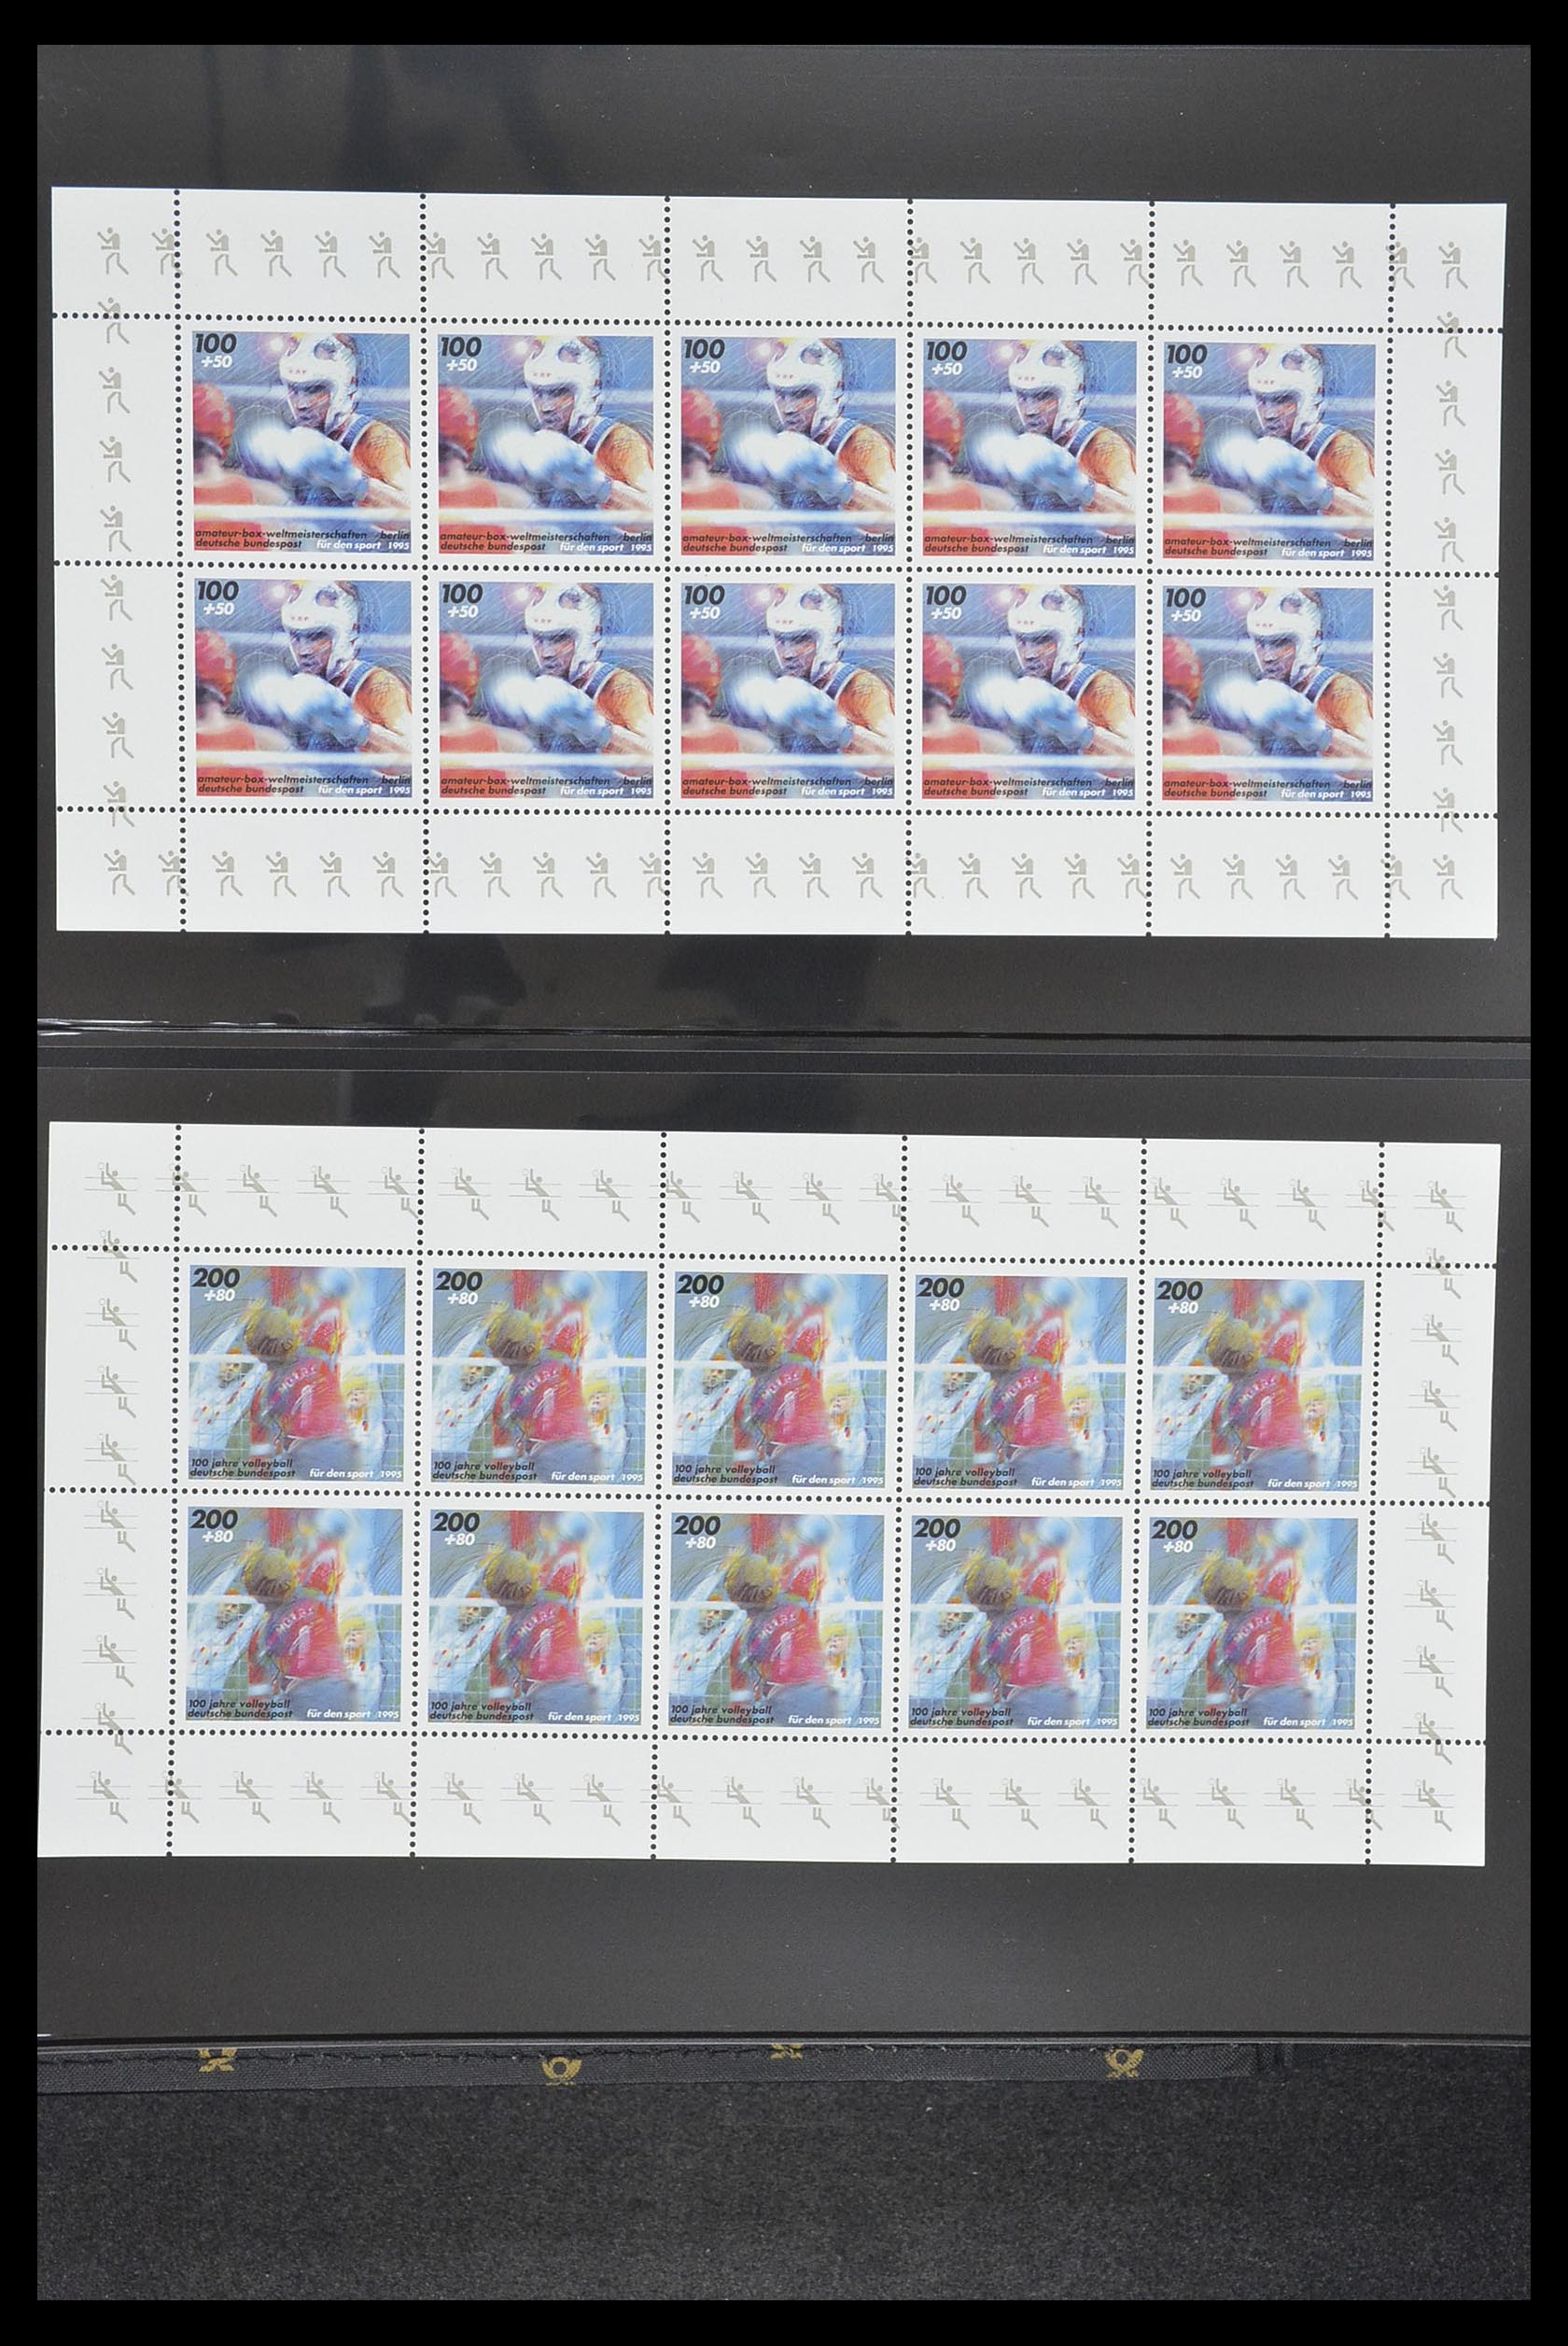 33936 013 - Stamp collection 33936 Bundespost kleinbogen 1994-2000.